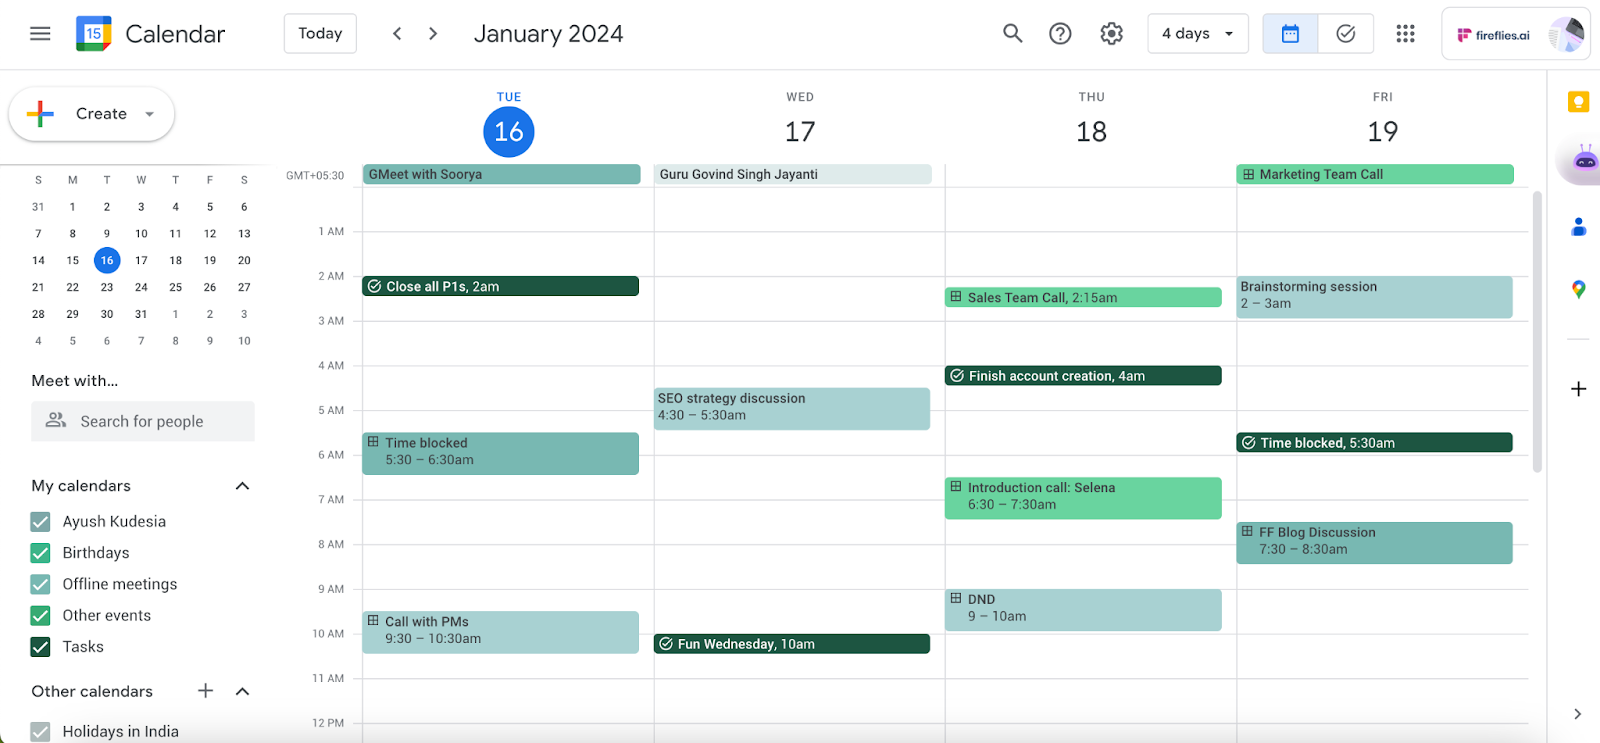 Google Calendar color scheme ideas - Monochrome Mint